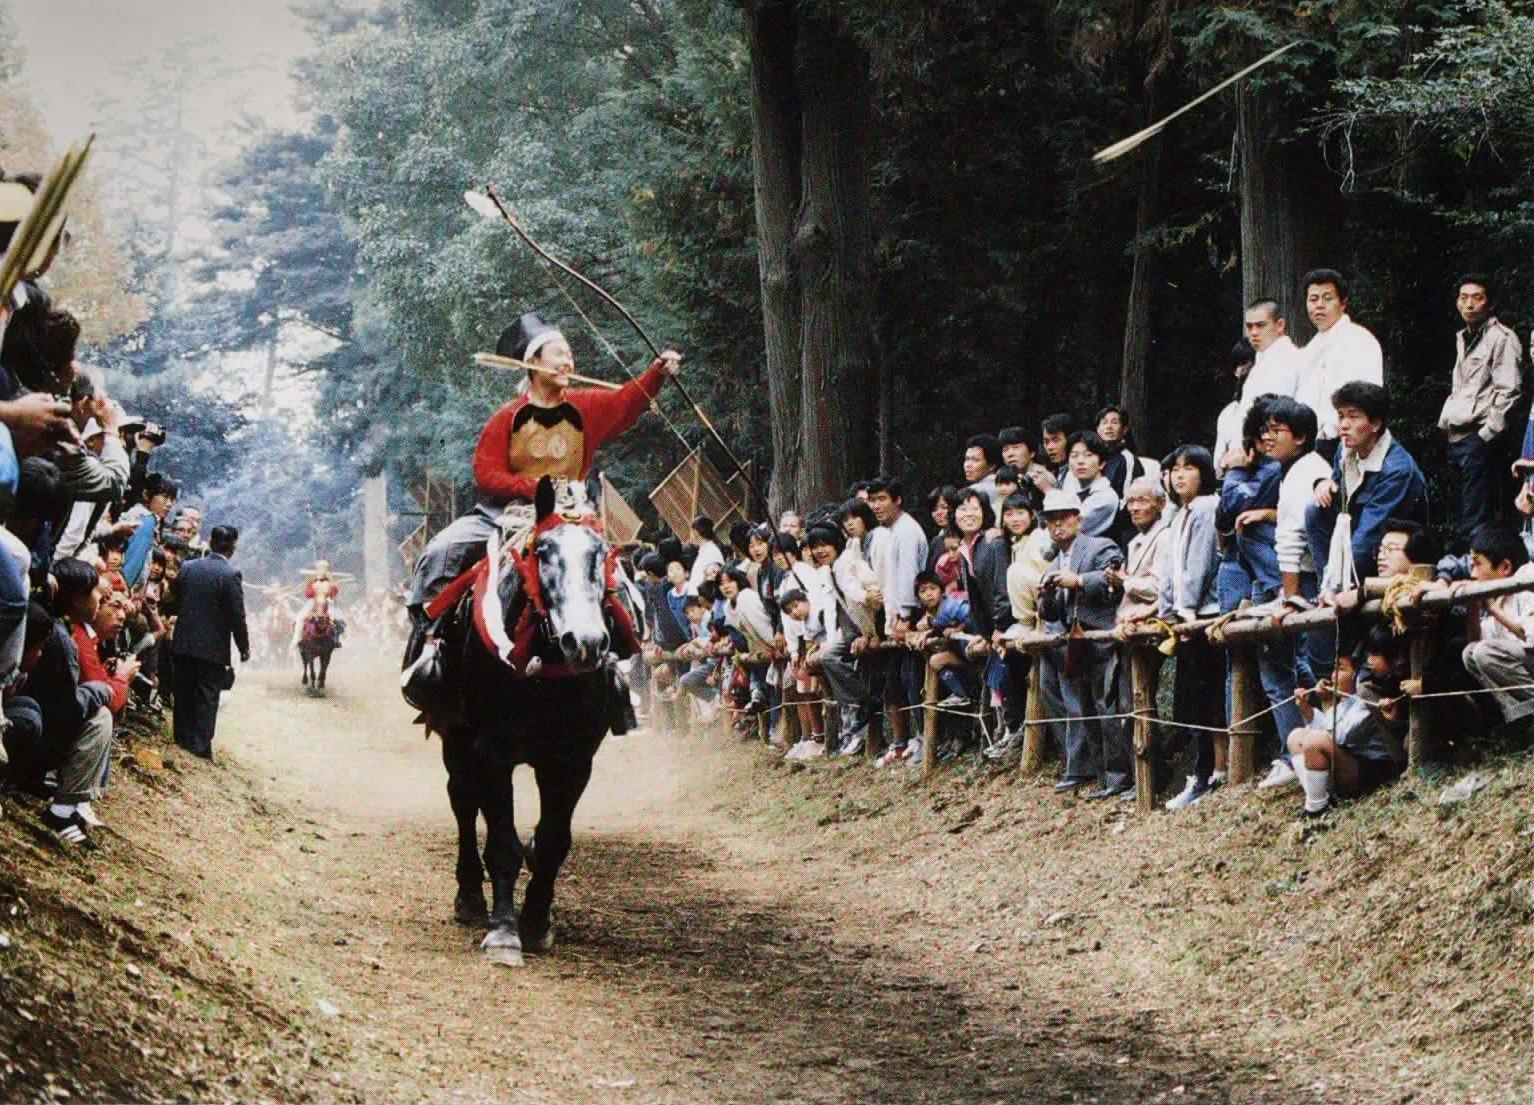 走っている馬に乗った乗り子の男性が、的に向かって矢を放っている写真